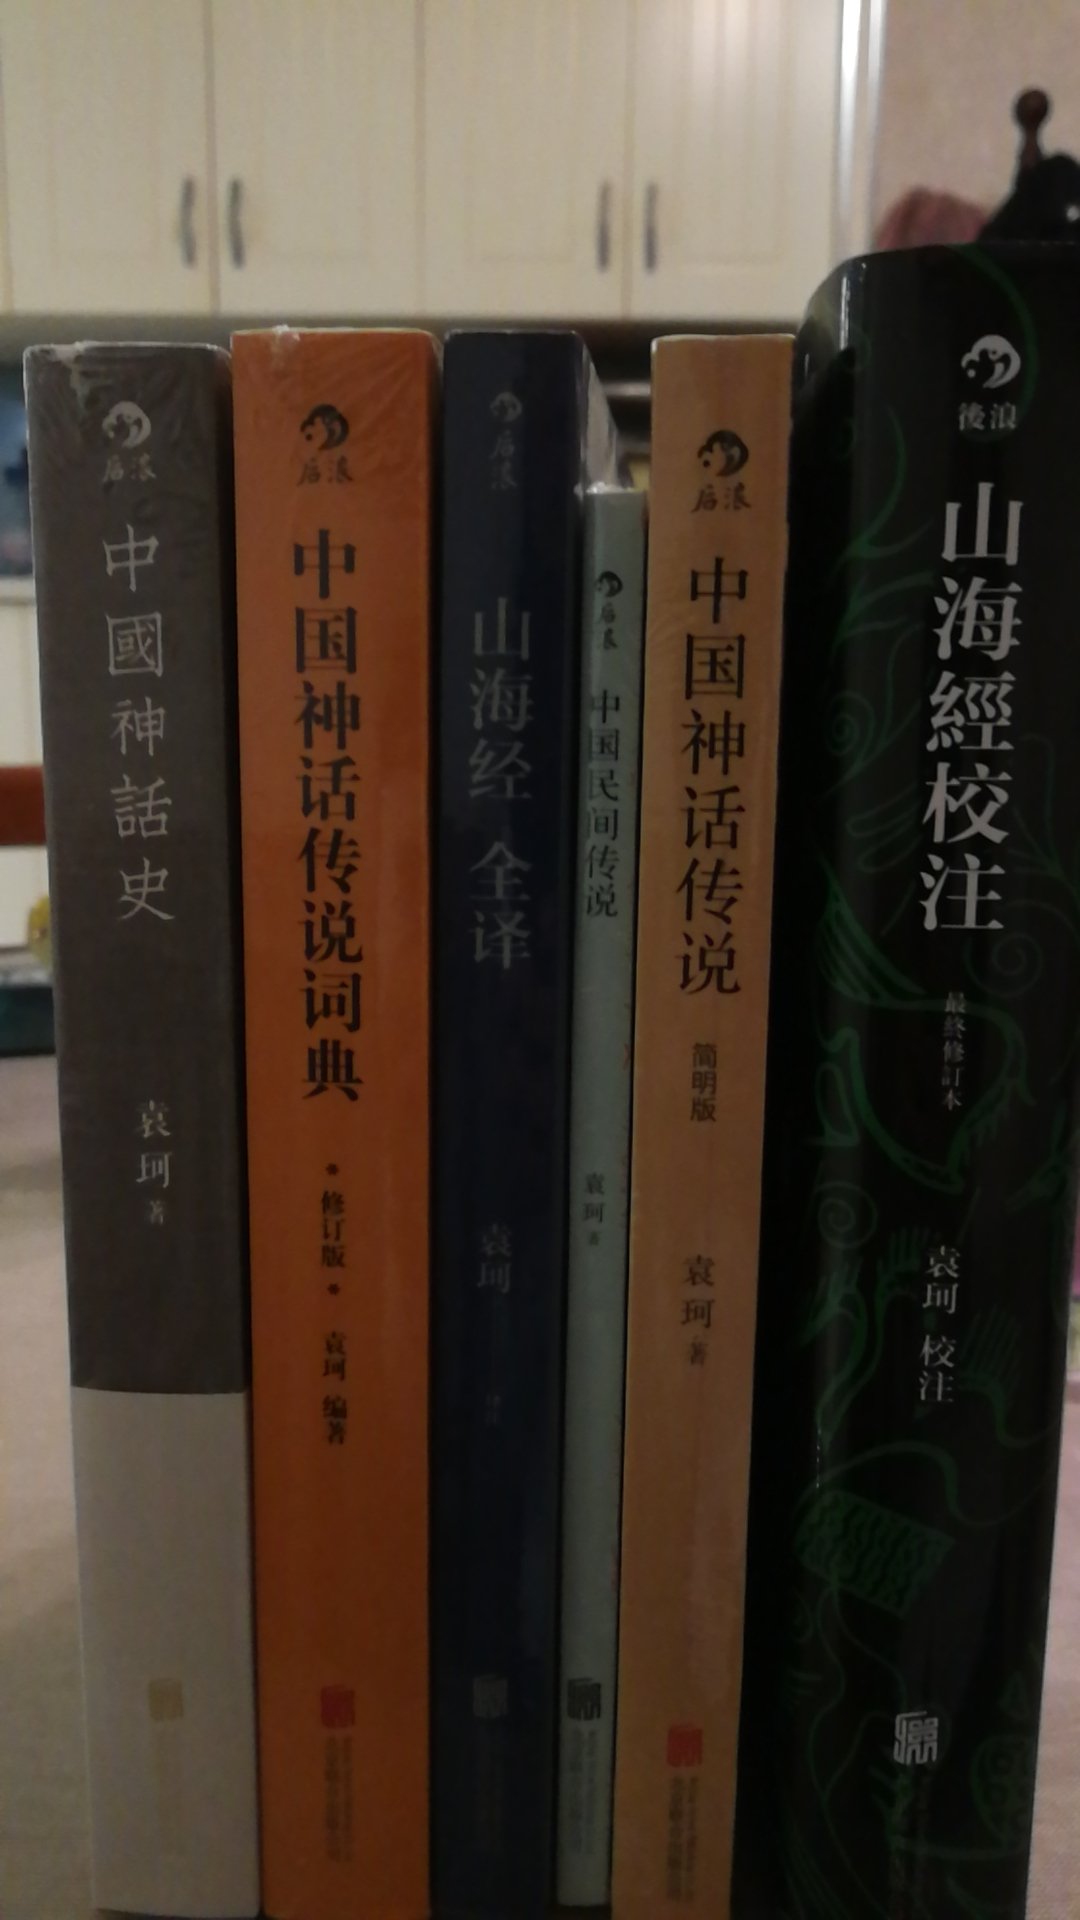 以考据和史料为基础来讲中国神话史的书，还算亲民。